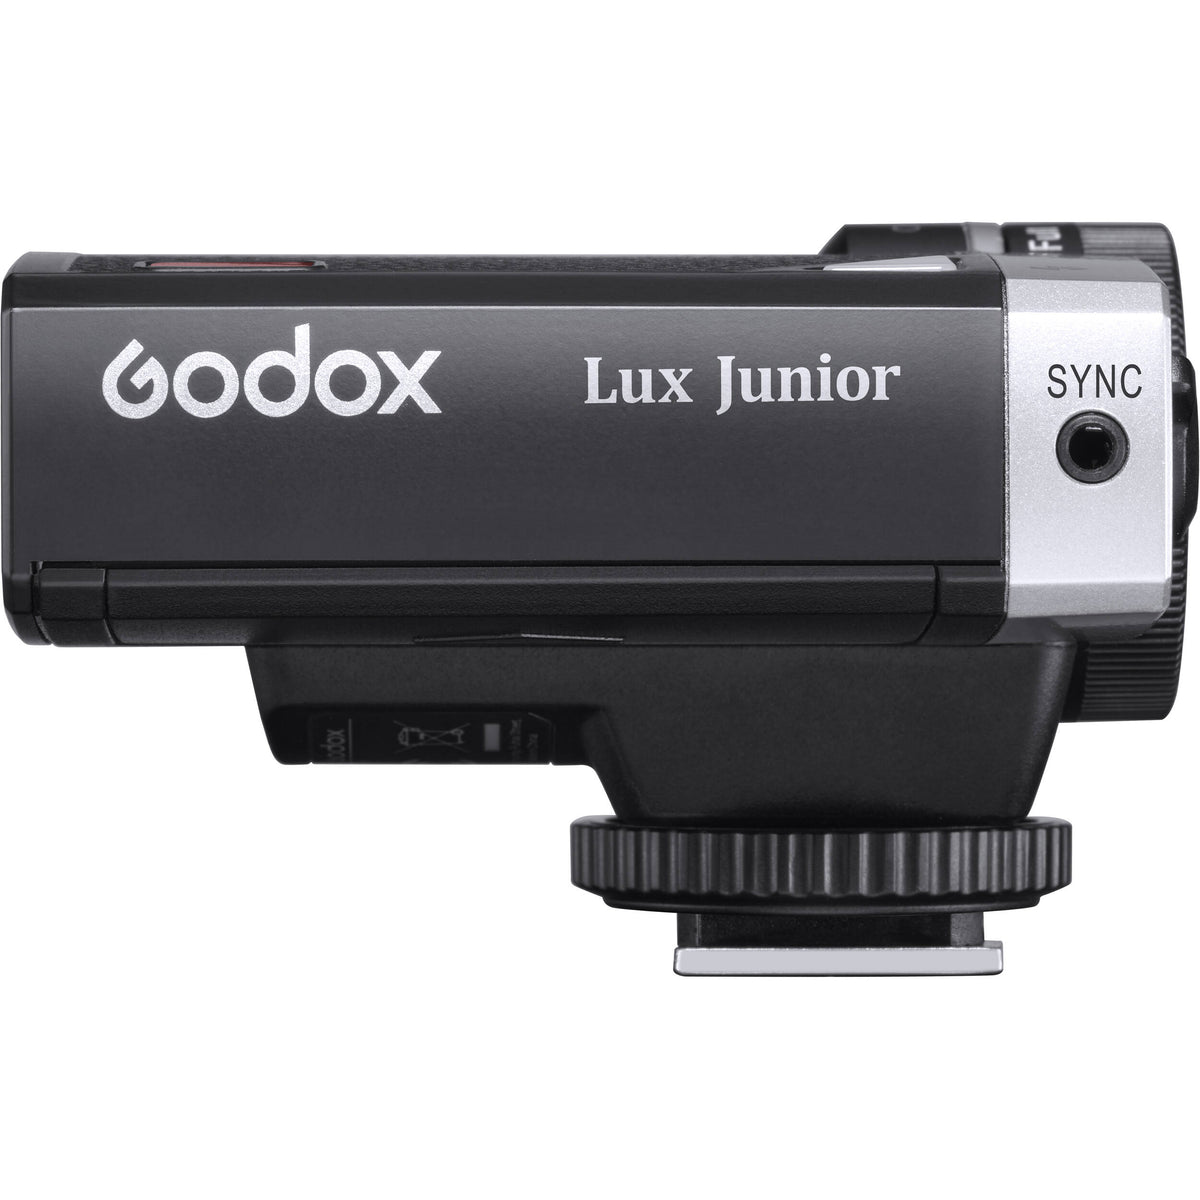 Godox Lux Senior Retro Camera Flash - Strobepro Studio Lighting